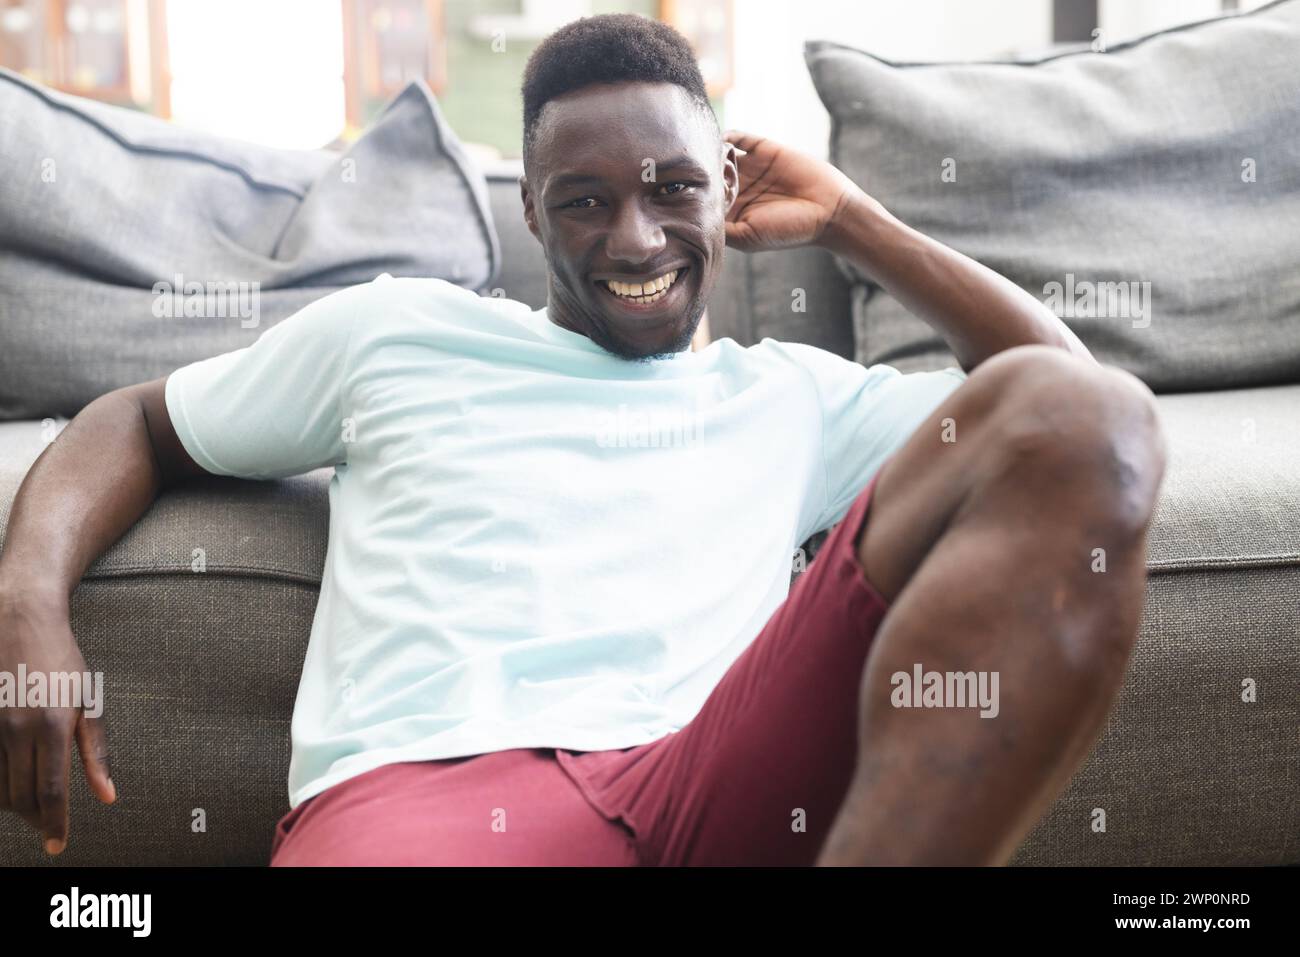 Jeune homme afro-américain se prélasse sur un canapé, souriant largement Banque D'Images